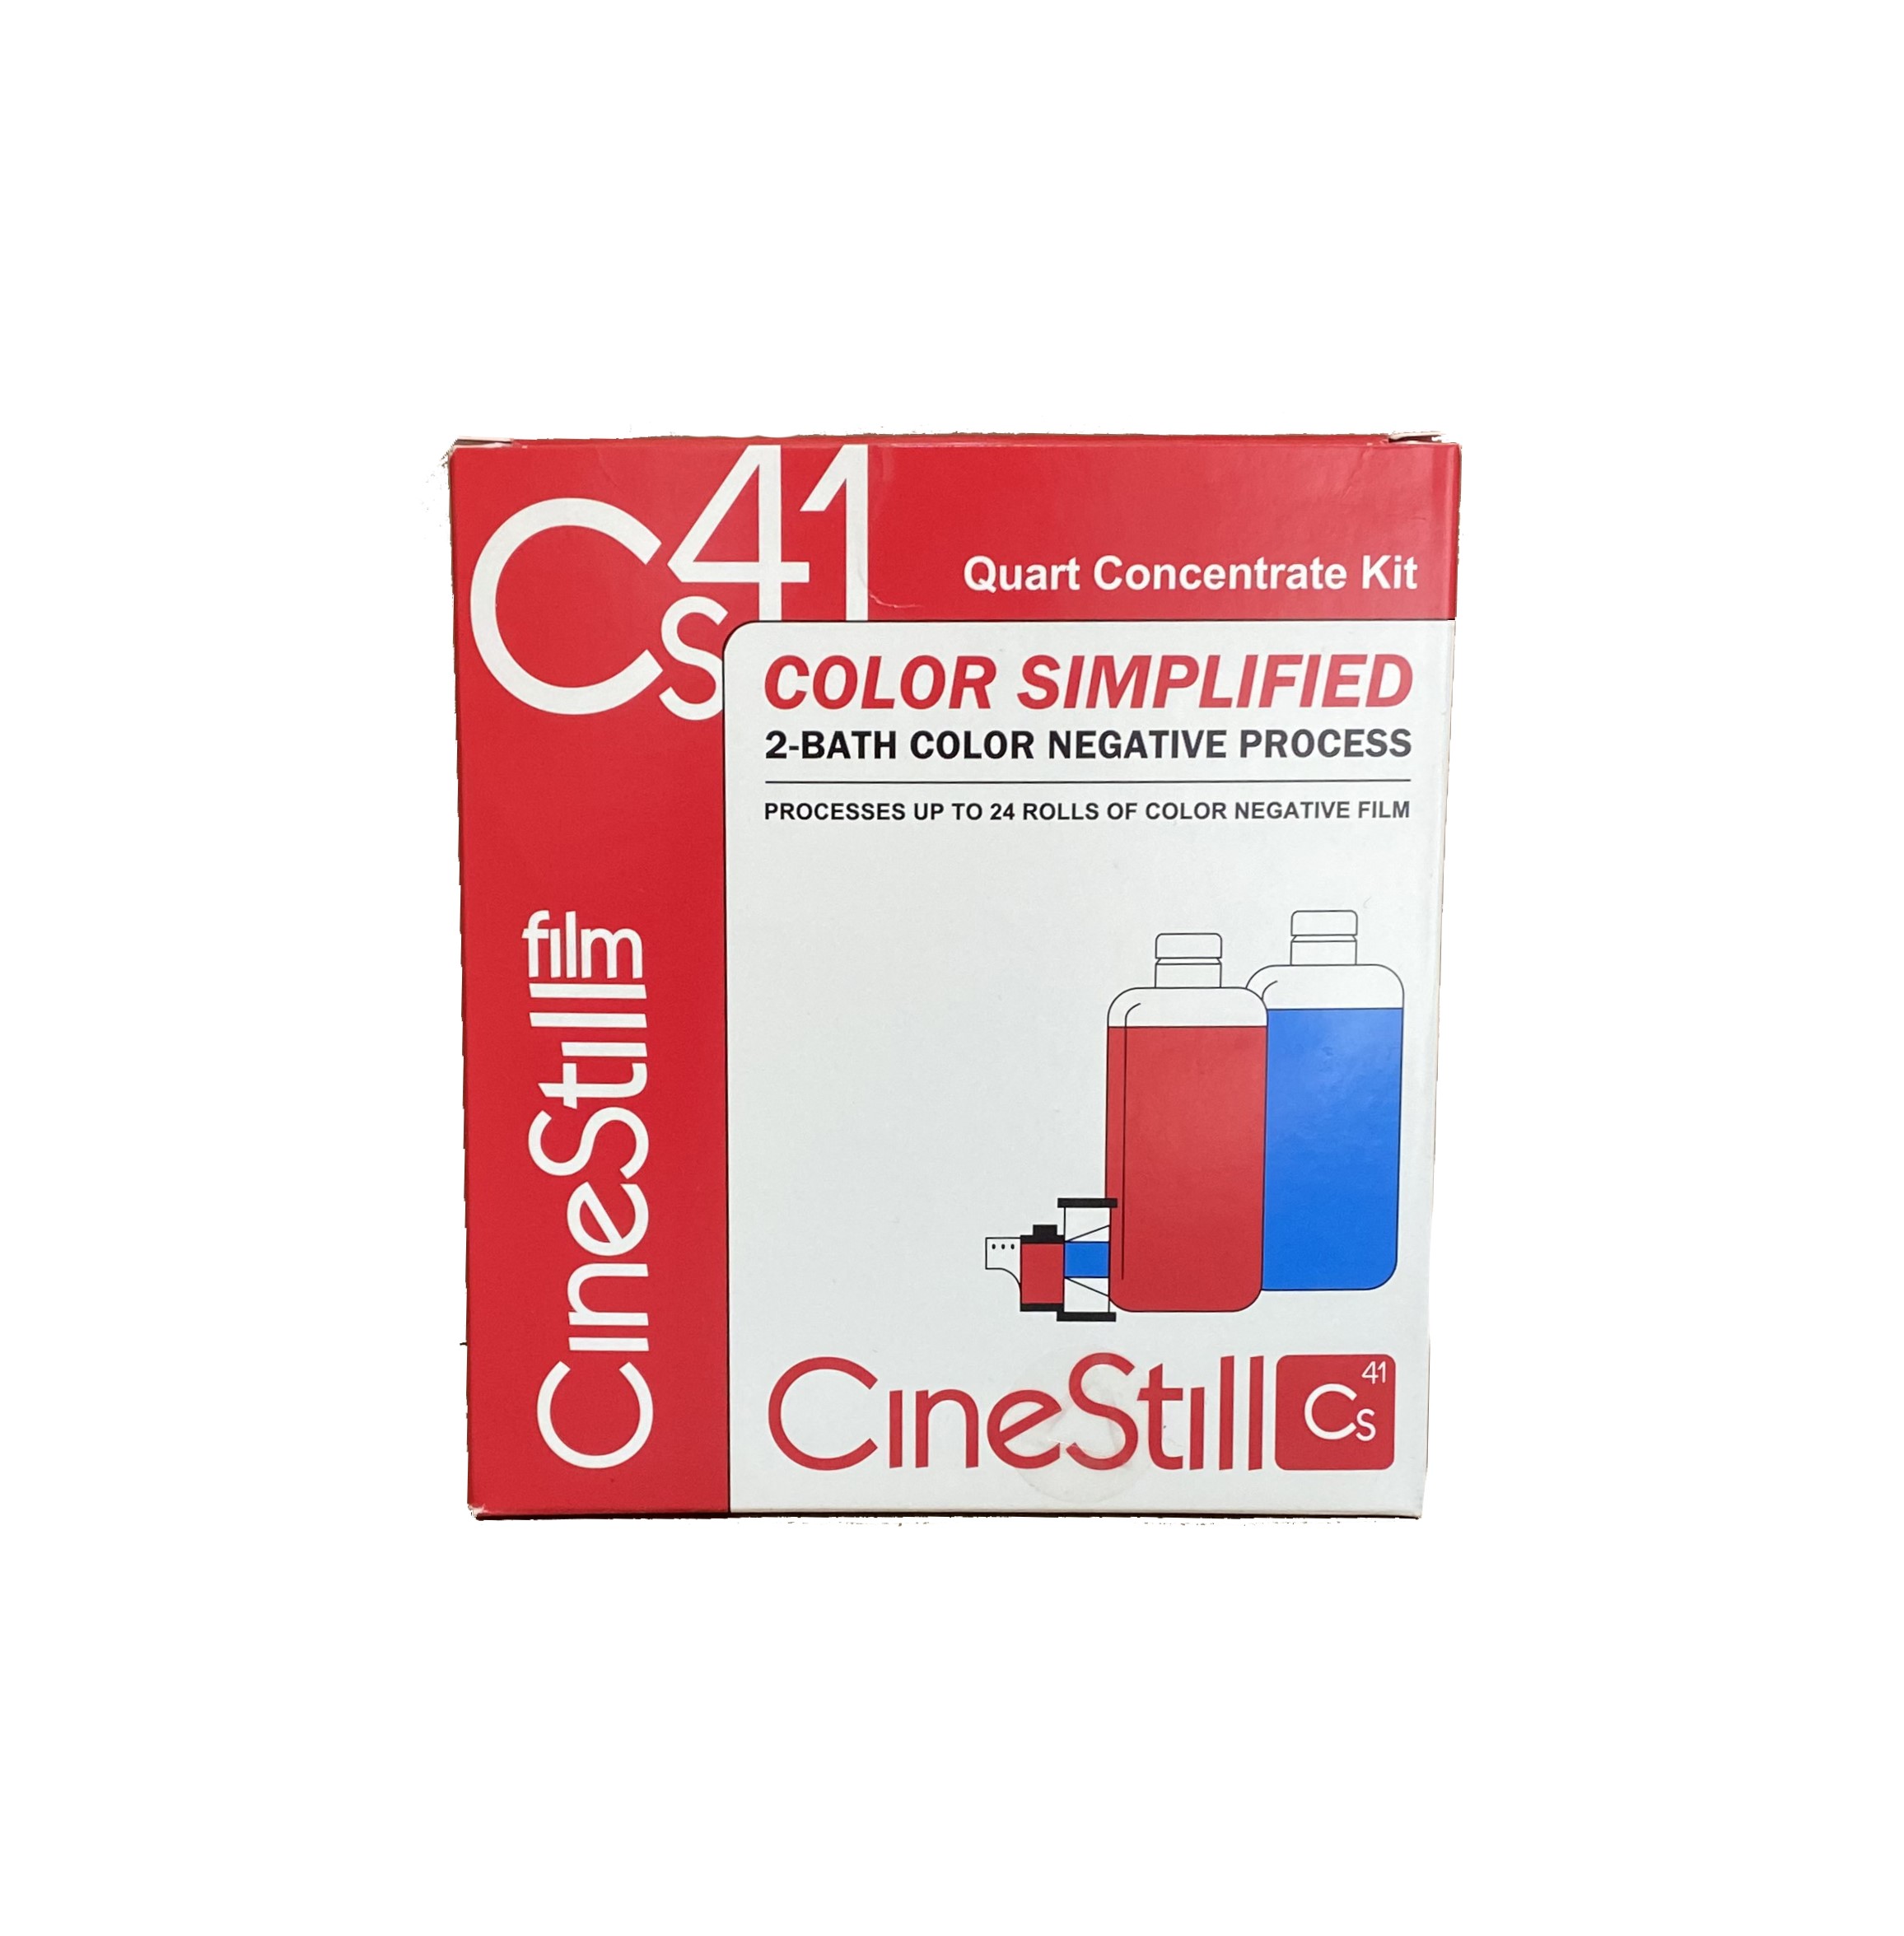 cinestill-color-simplified-quart-concentrste-kit-fotokotti